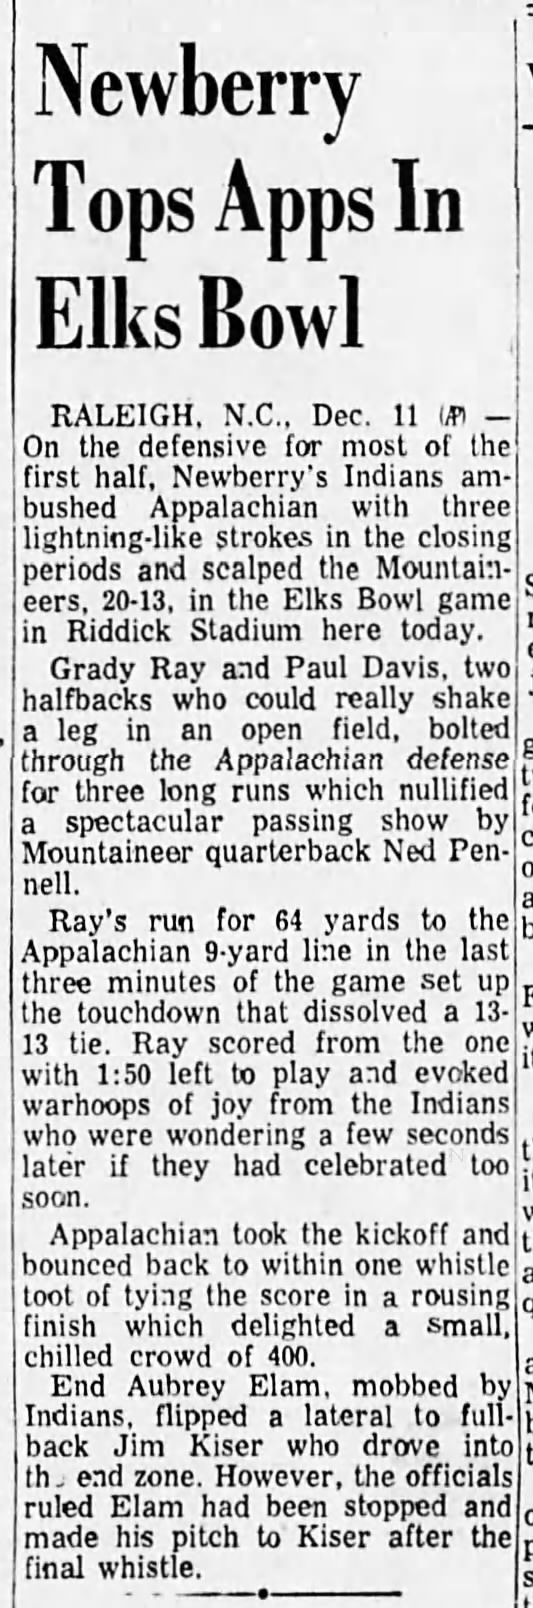 Elks Bowl 1954 result